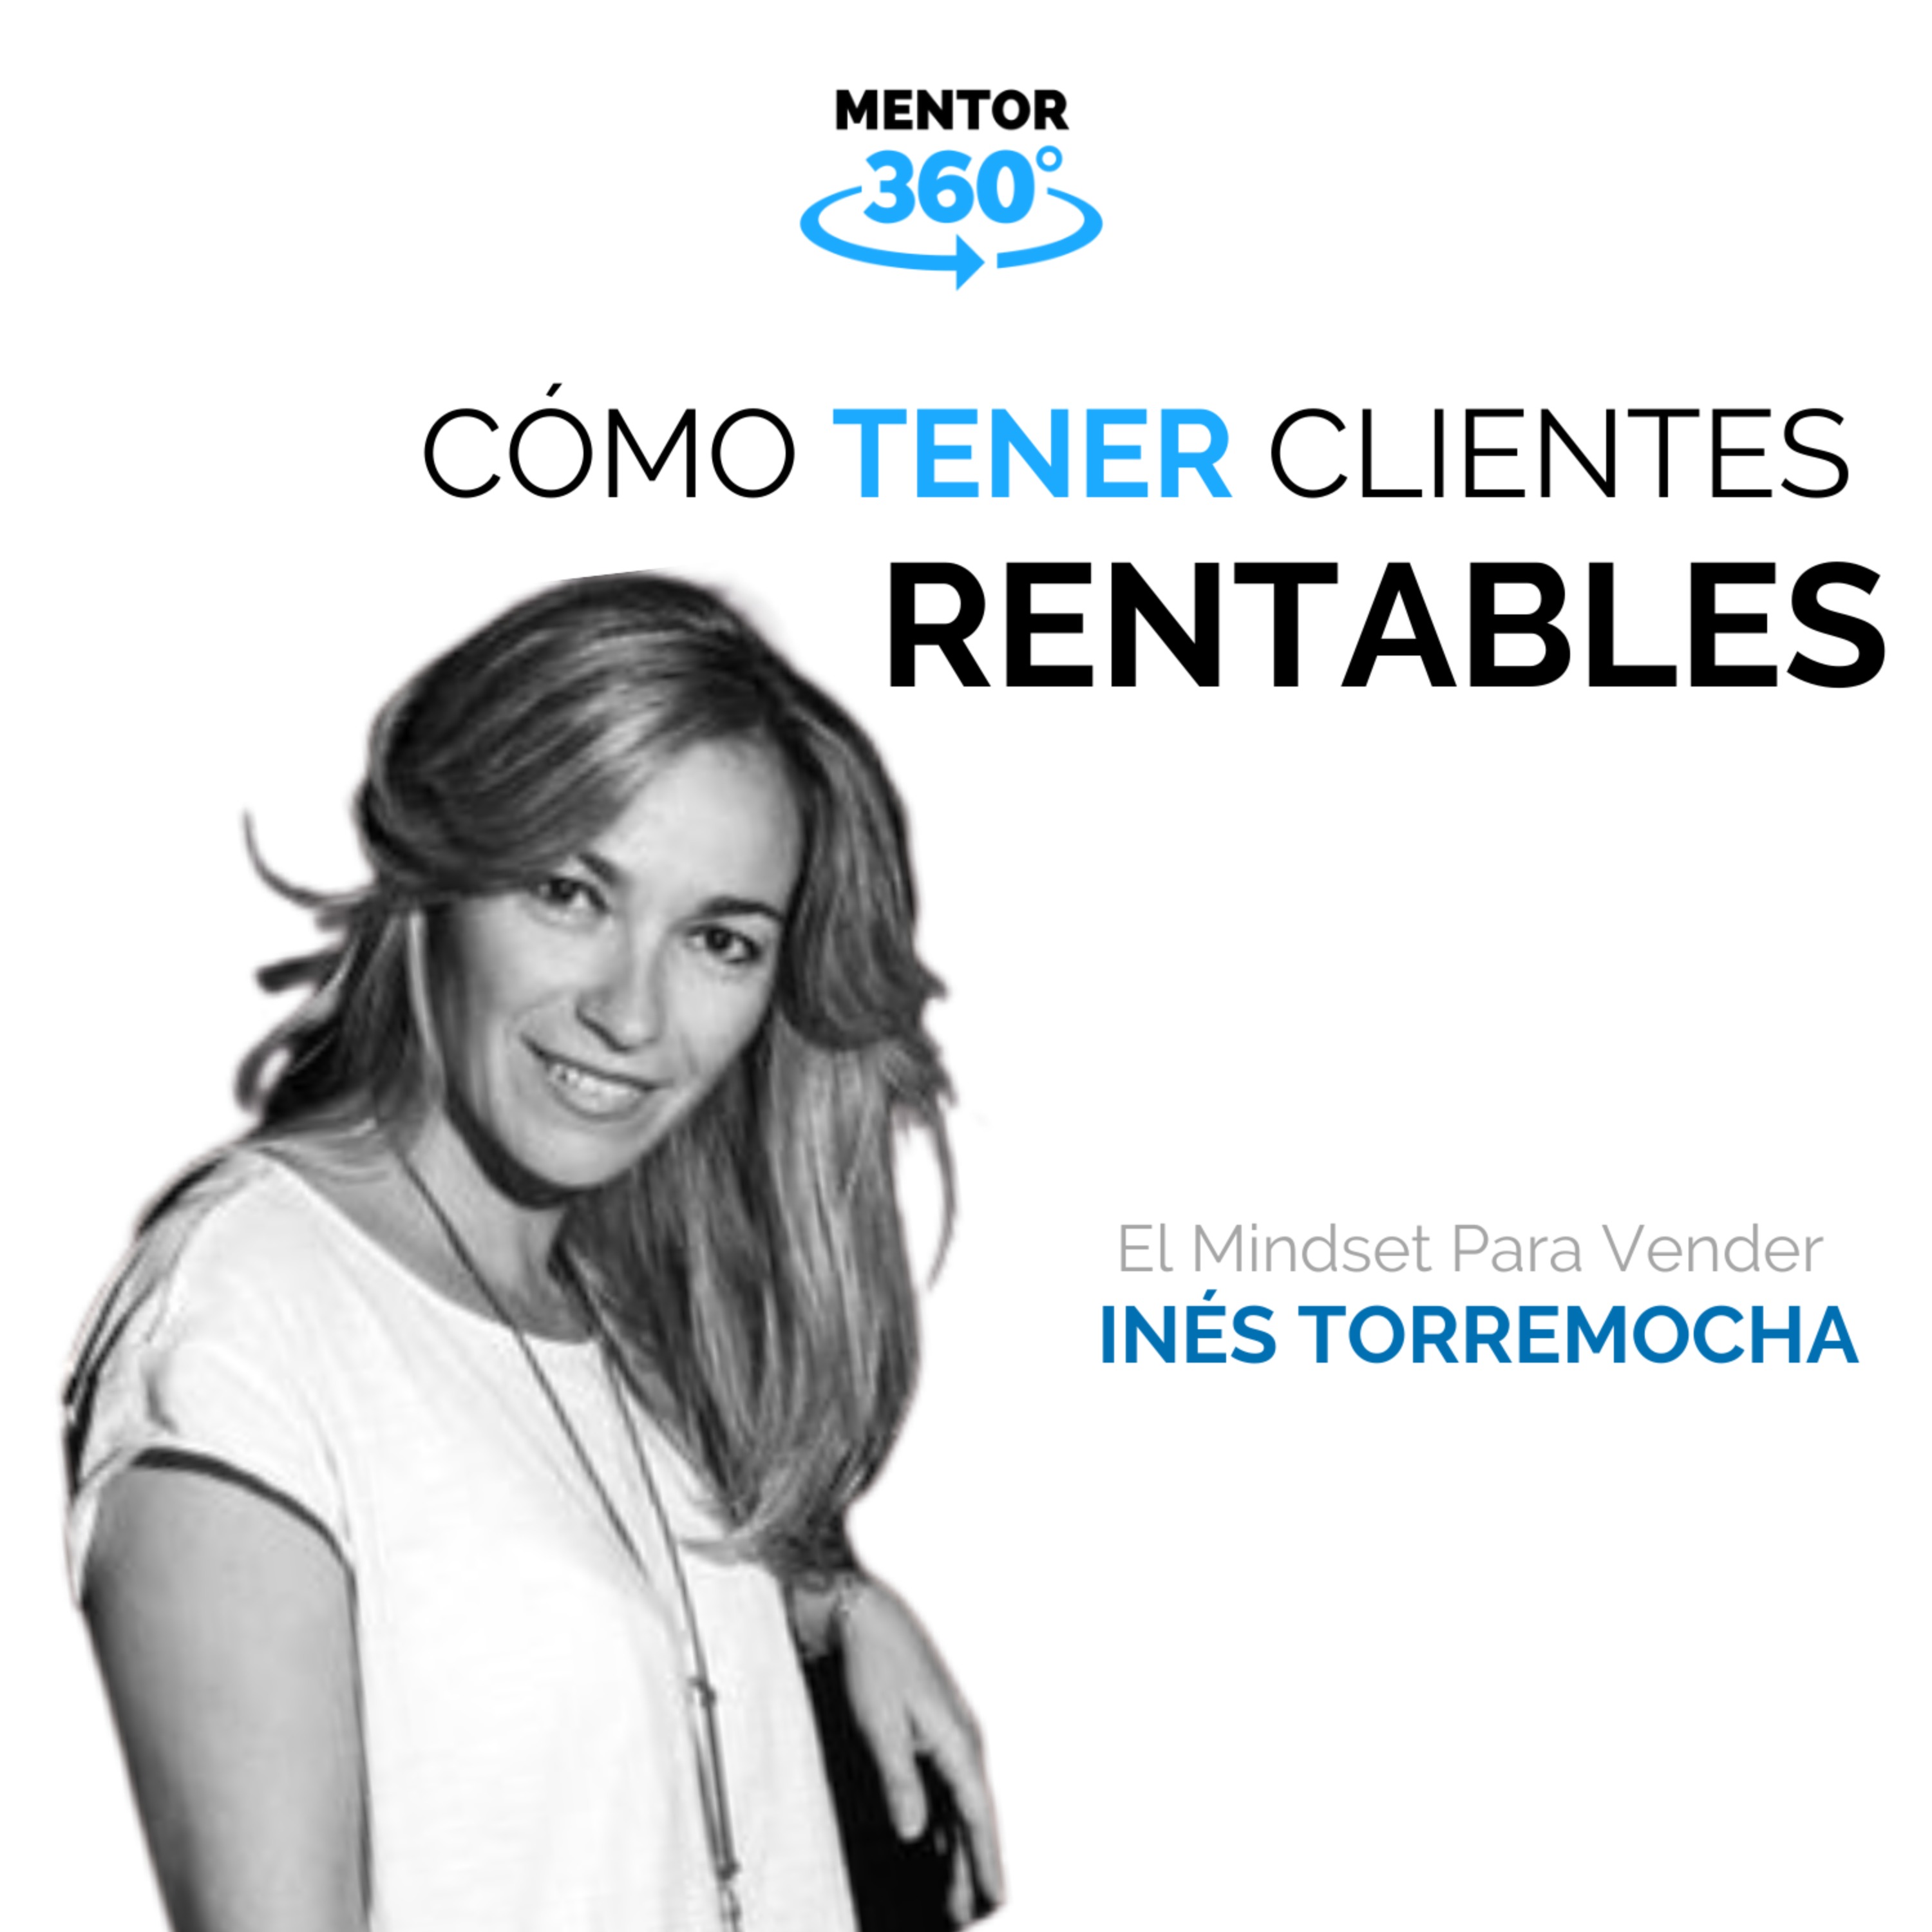 Cómo Tener Clientes Rentables - El Mindset Para Vender - Inés Torremocha - MENTOR360